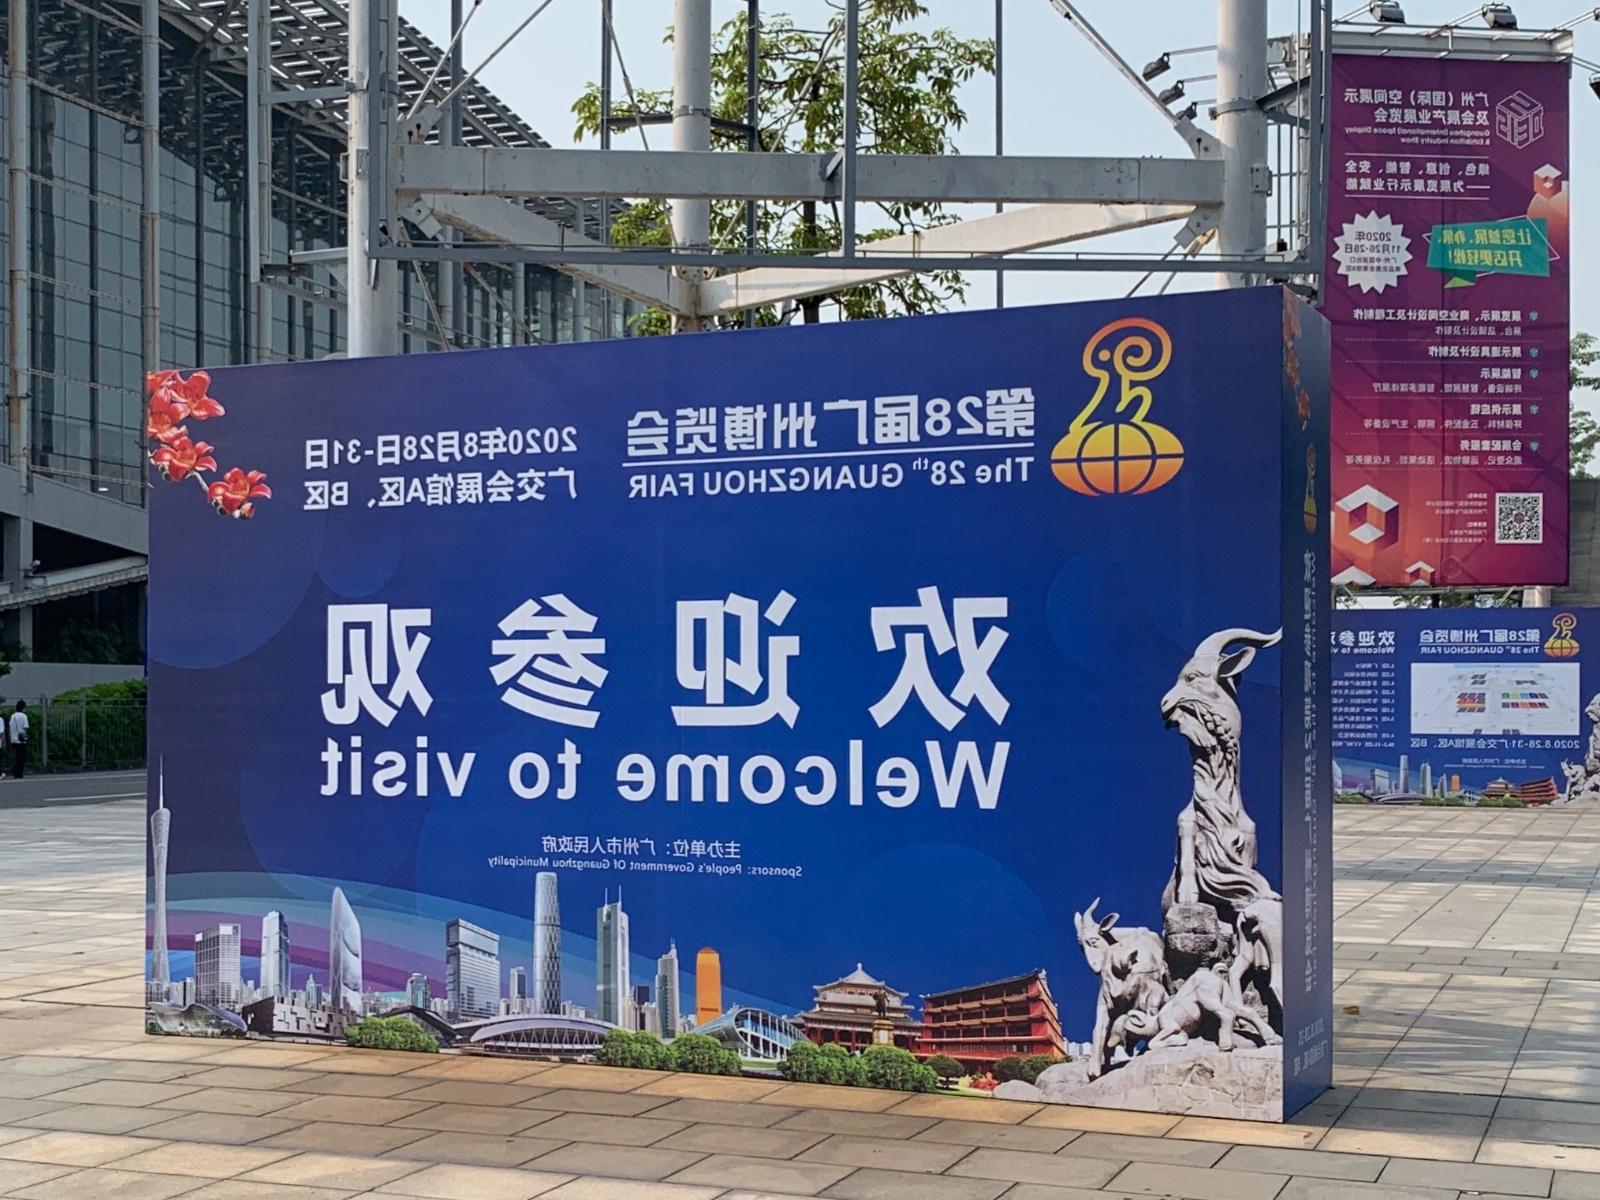 第28届广州博览会顺利举办 欧洲杯买球网亮相科技创新展区